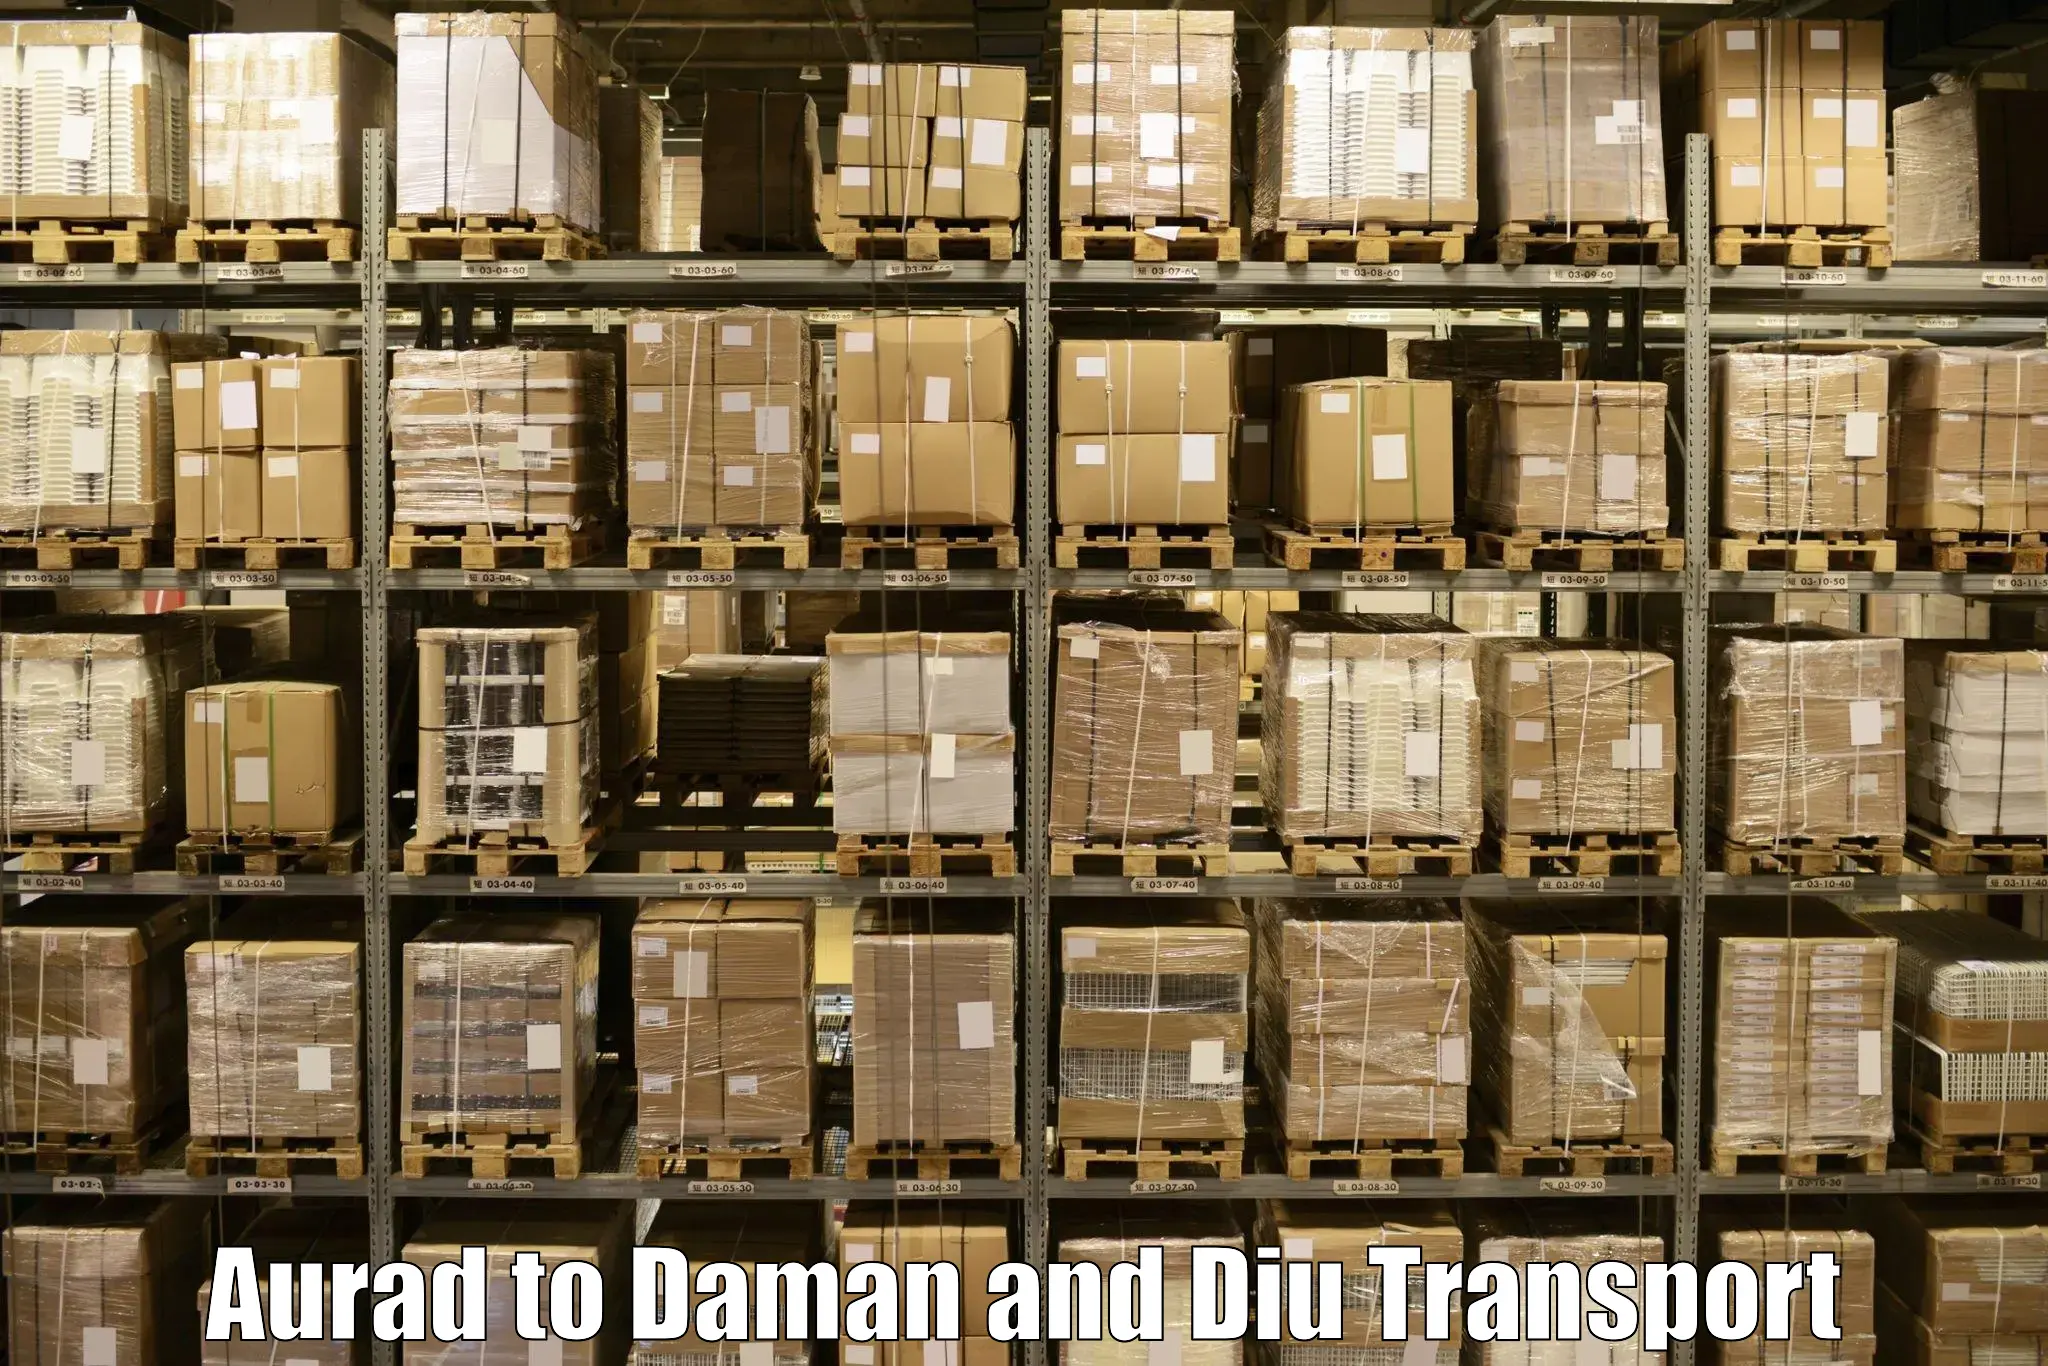 Bike shipping service Aurad to Daman